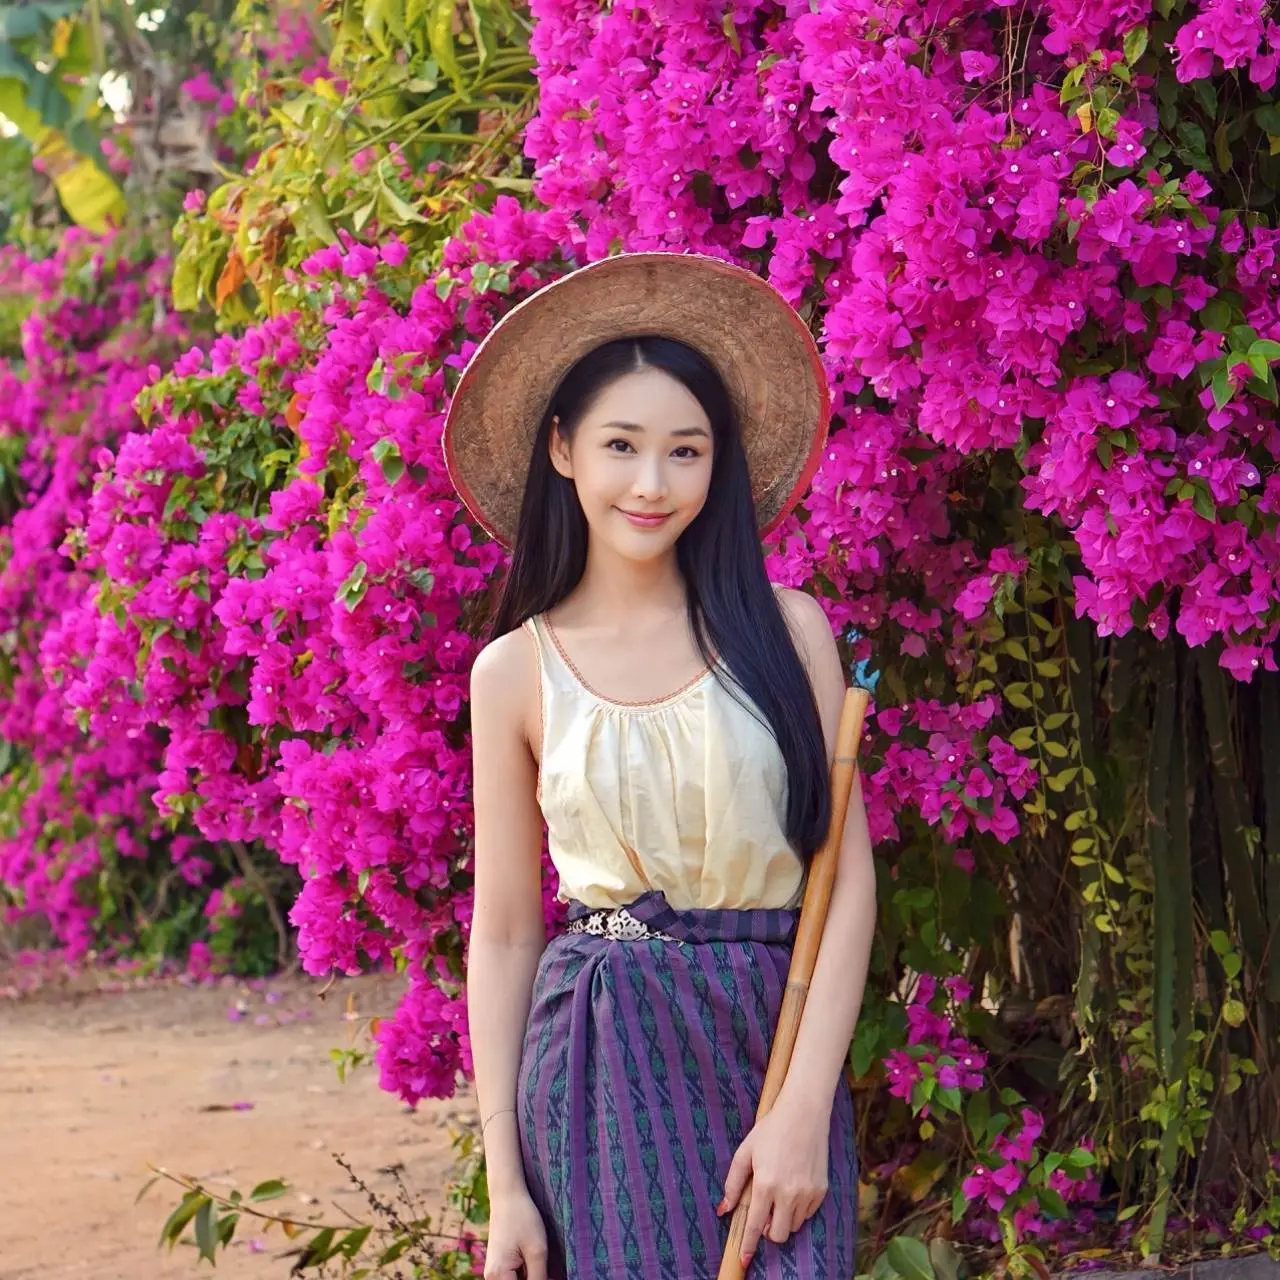 แอบส่องความน่ารั มีสไตล์ ของสาวไทยหน้าสวยหมวยอินเตอร์กัน